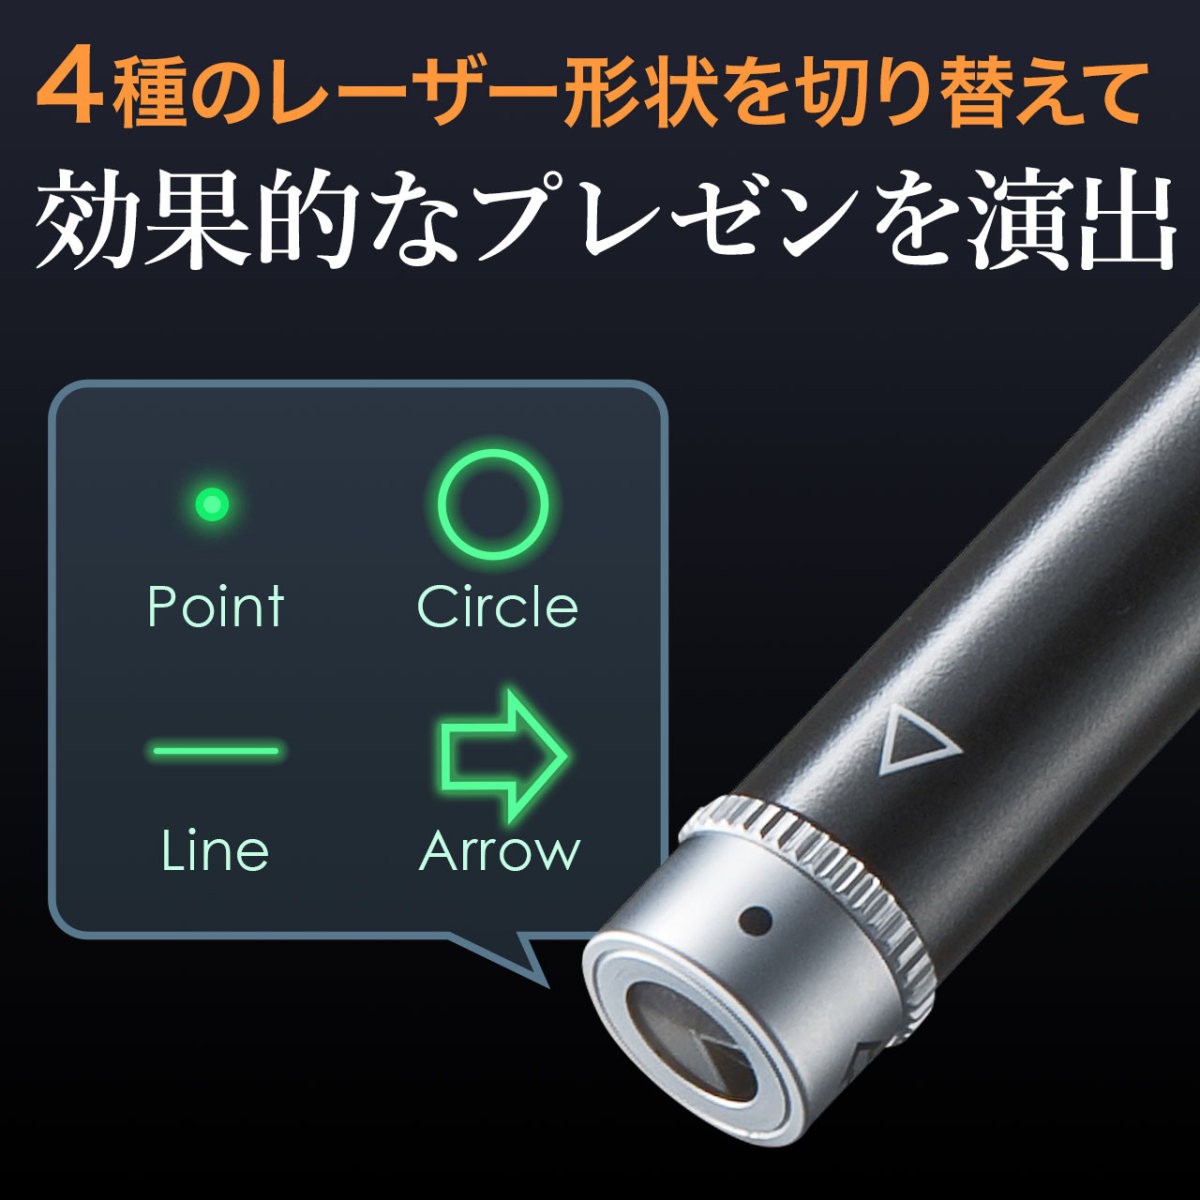 サンワサプライ レーザーポインター グリーンレーザー 緑色レーザー ポインター形状変更 照射形状変更 PSCマーク認証 200-LPP026